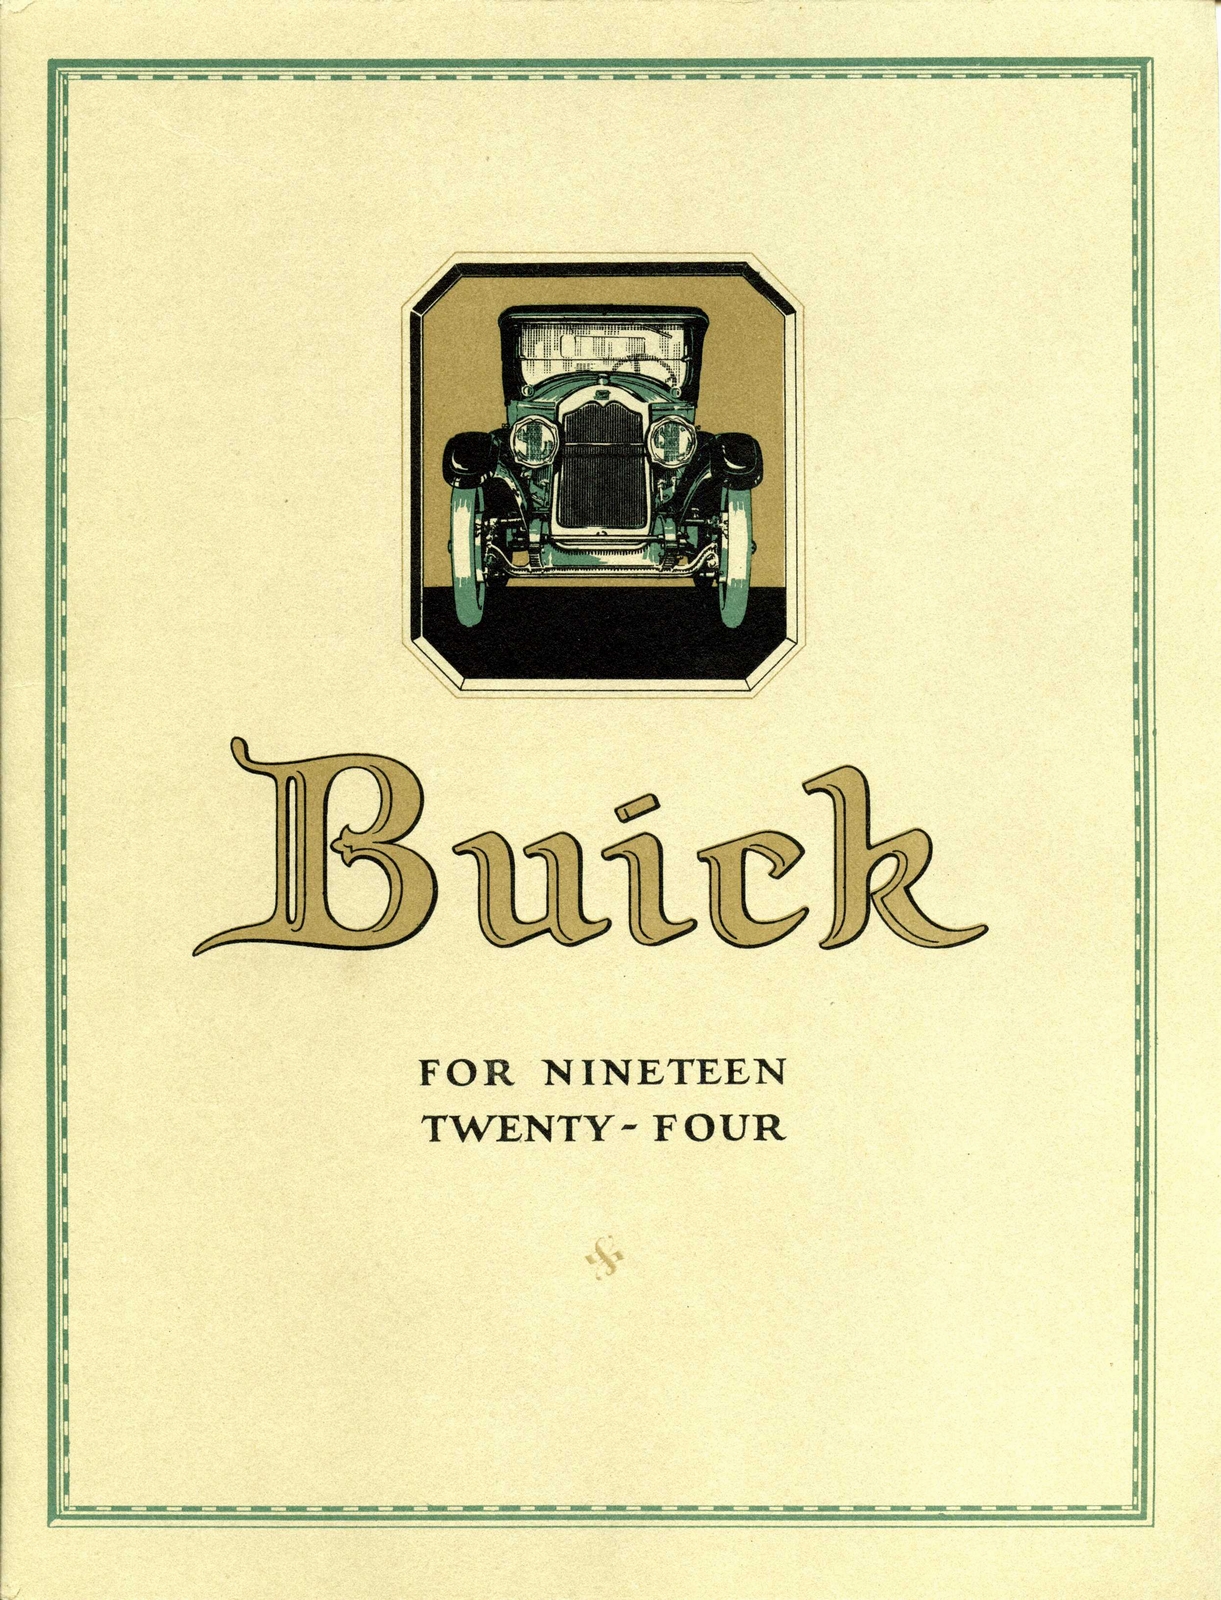 n_1924 Buick Brochure-00.jpg